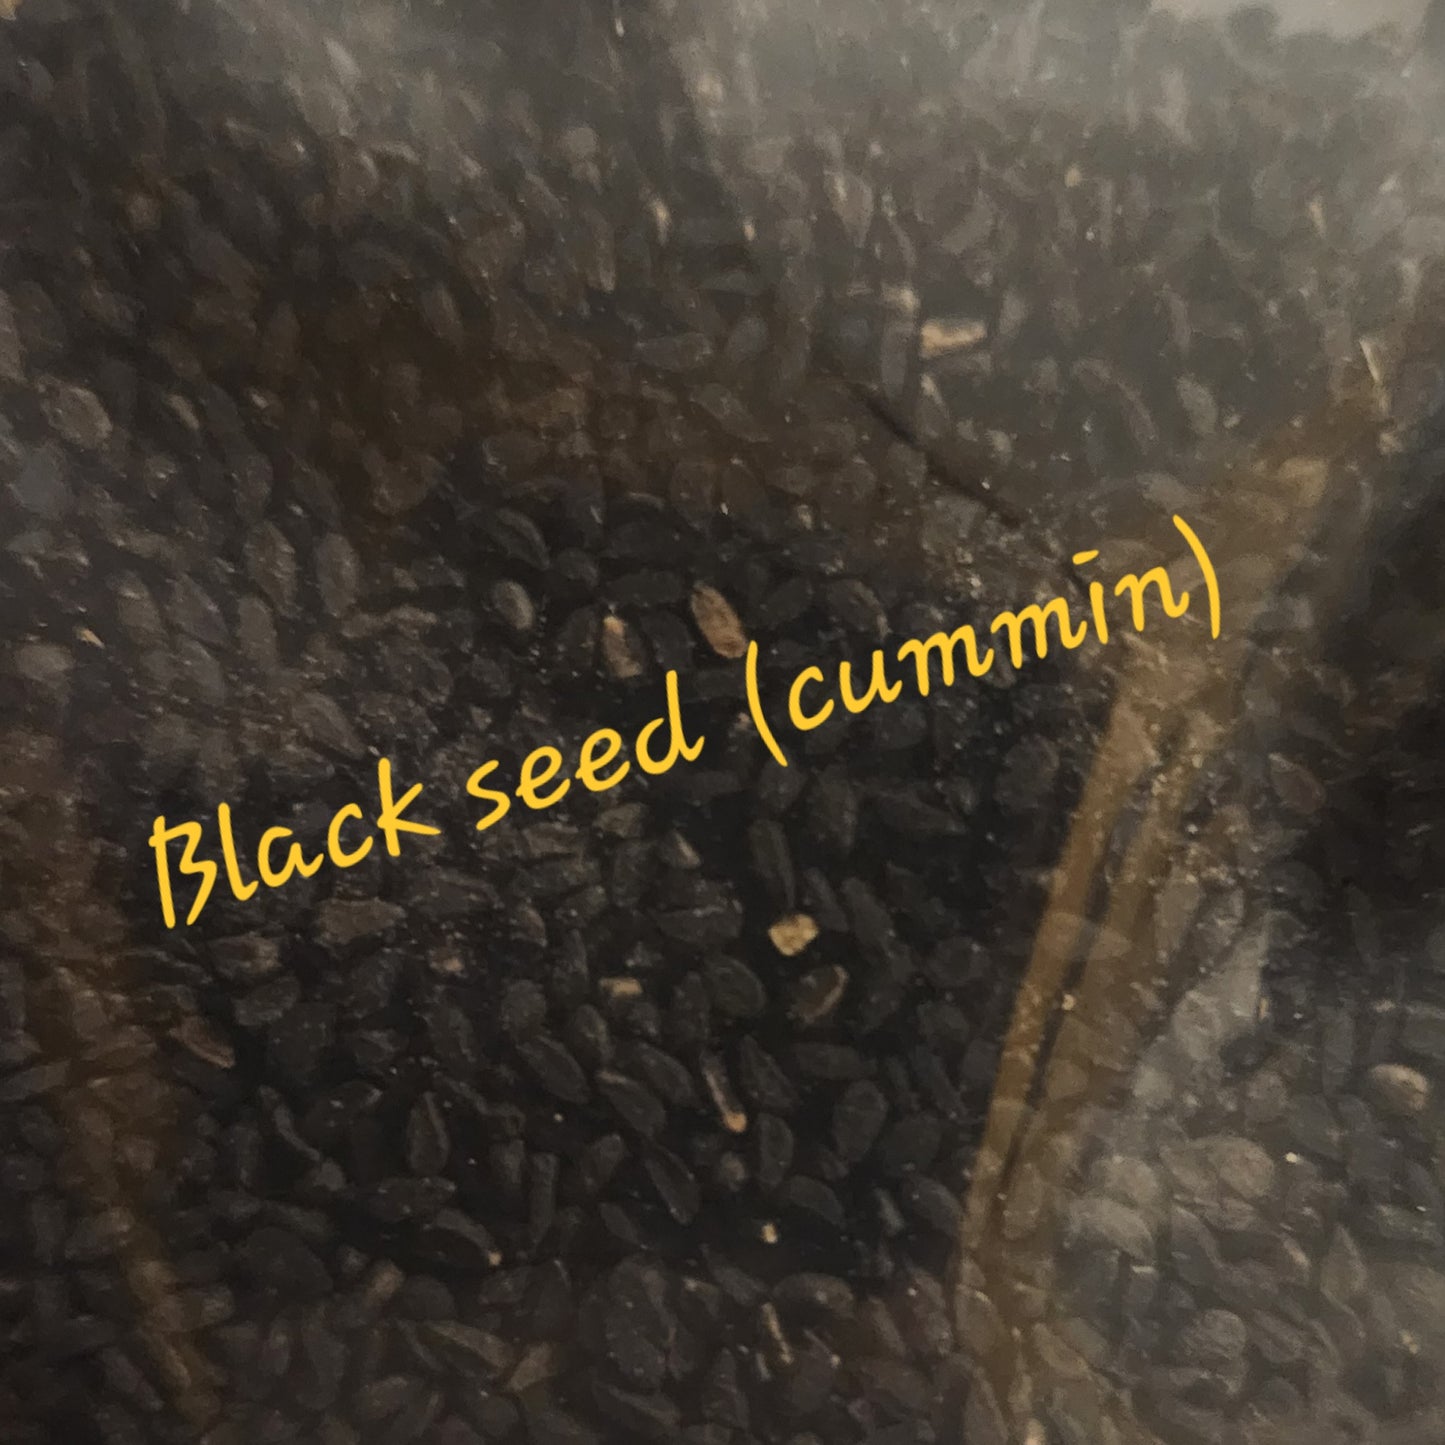 Black seed (Nigella Sativa)